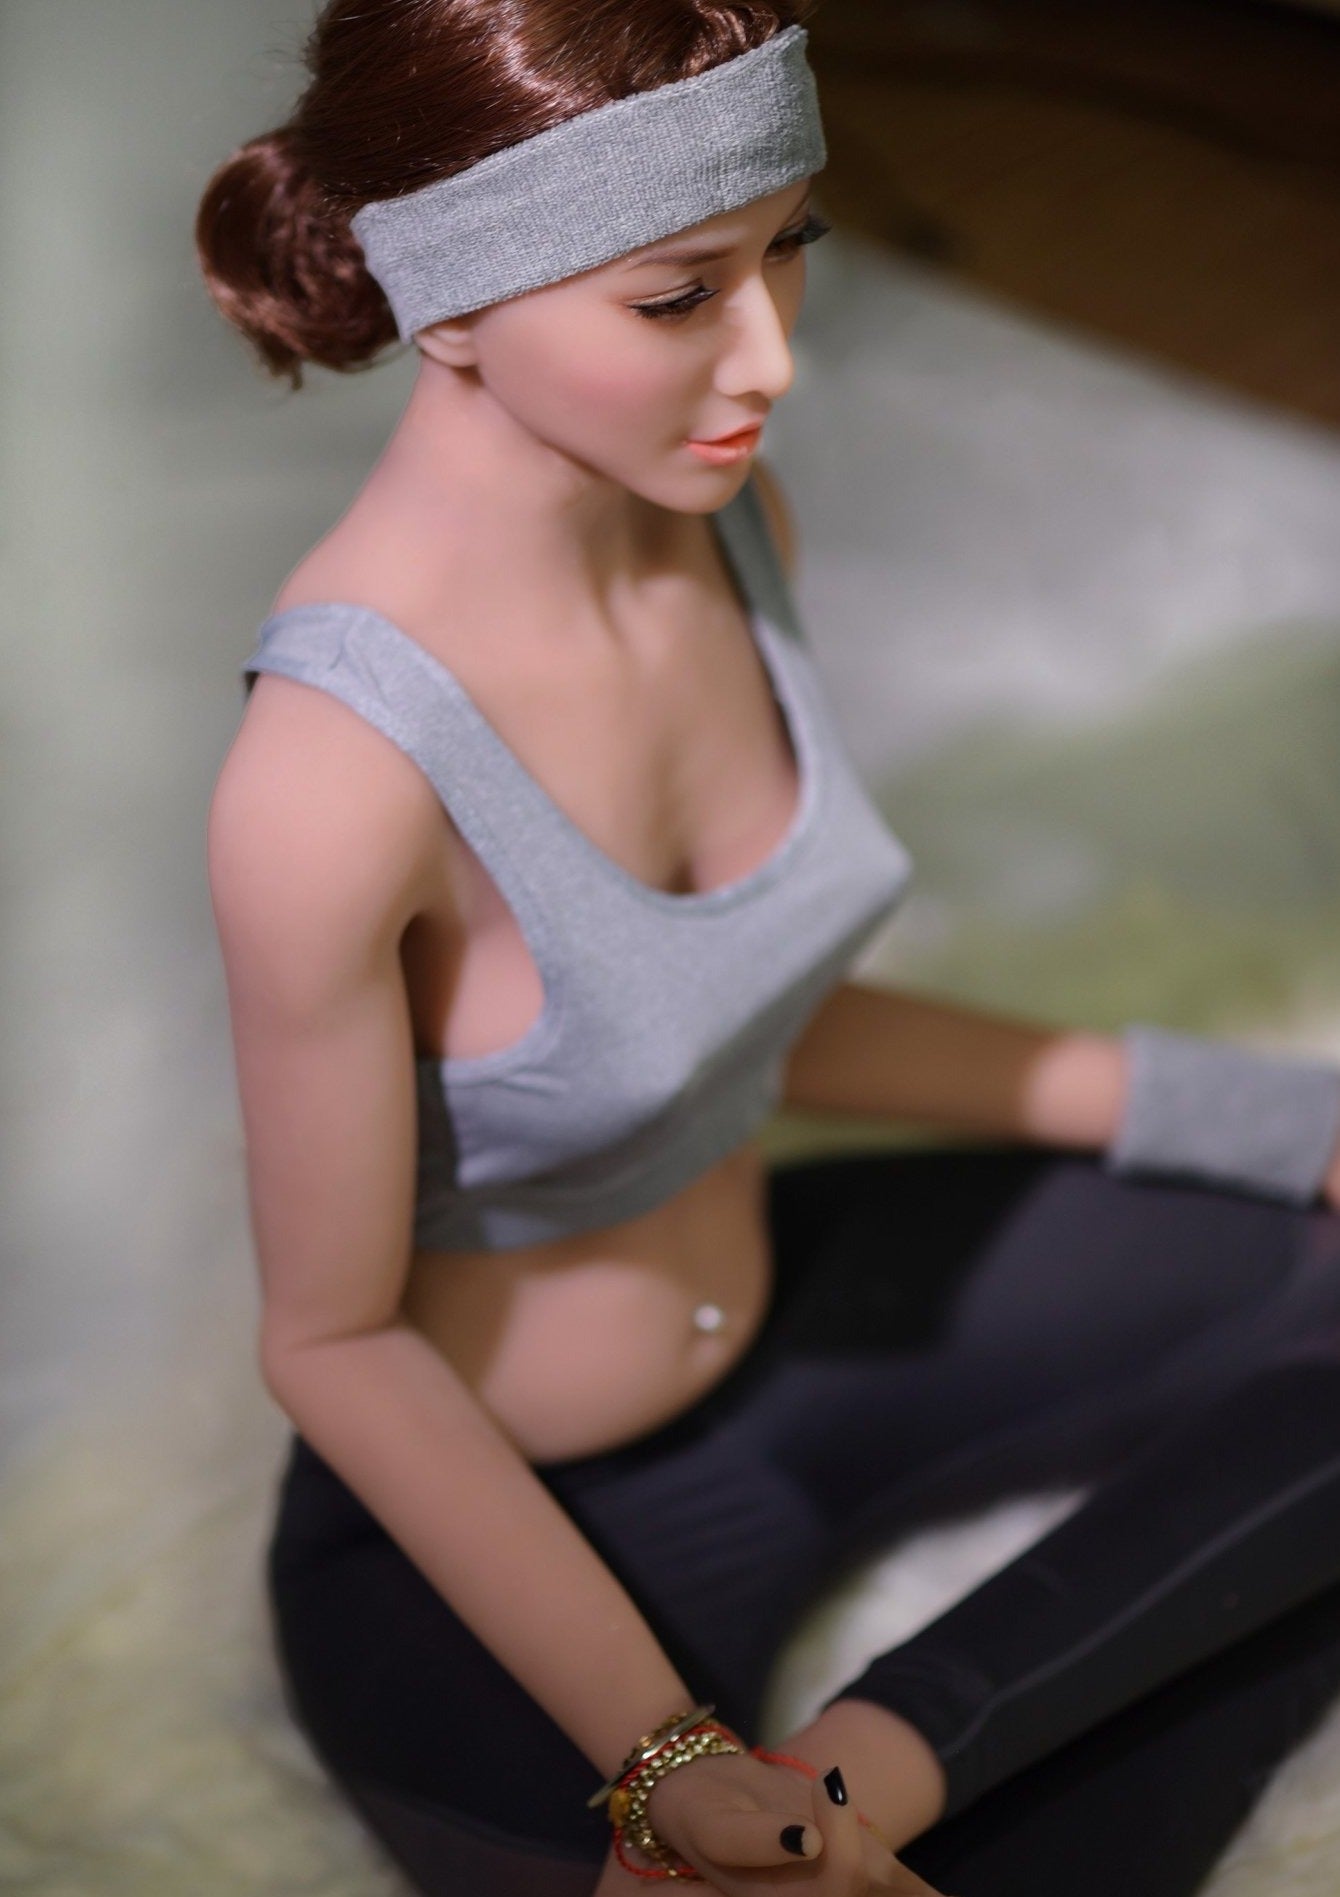 6YE 170cm Bcup yogurt meditation sports sex girl Ziva - lovedollshop